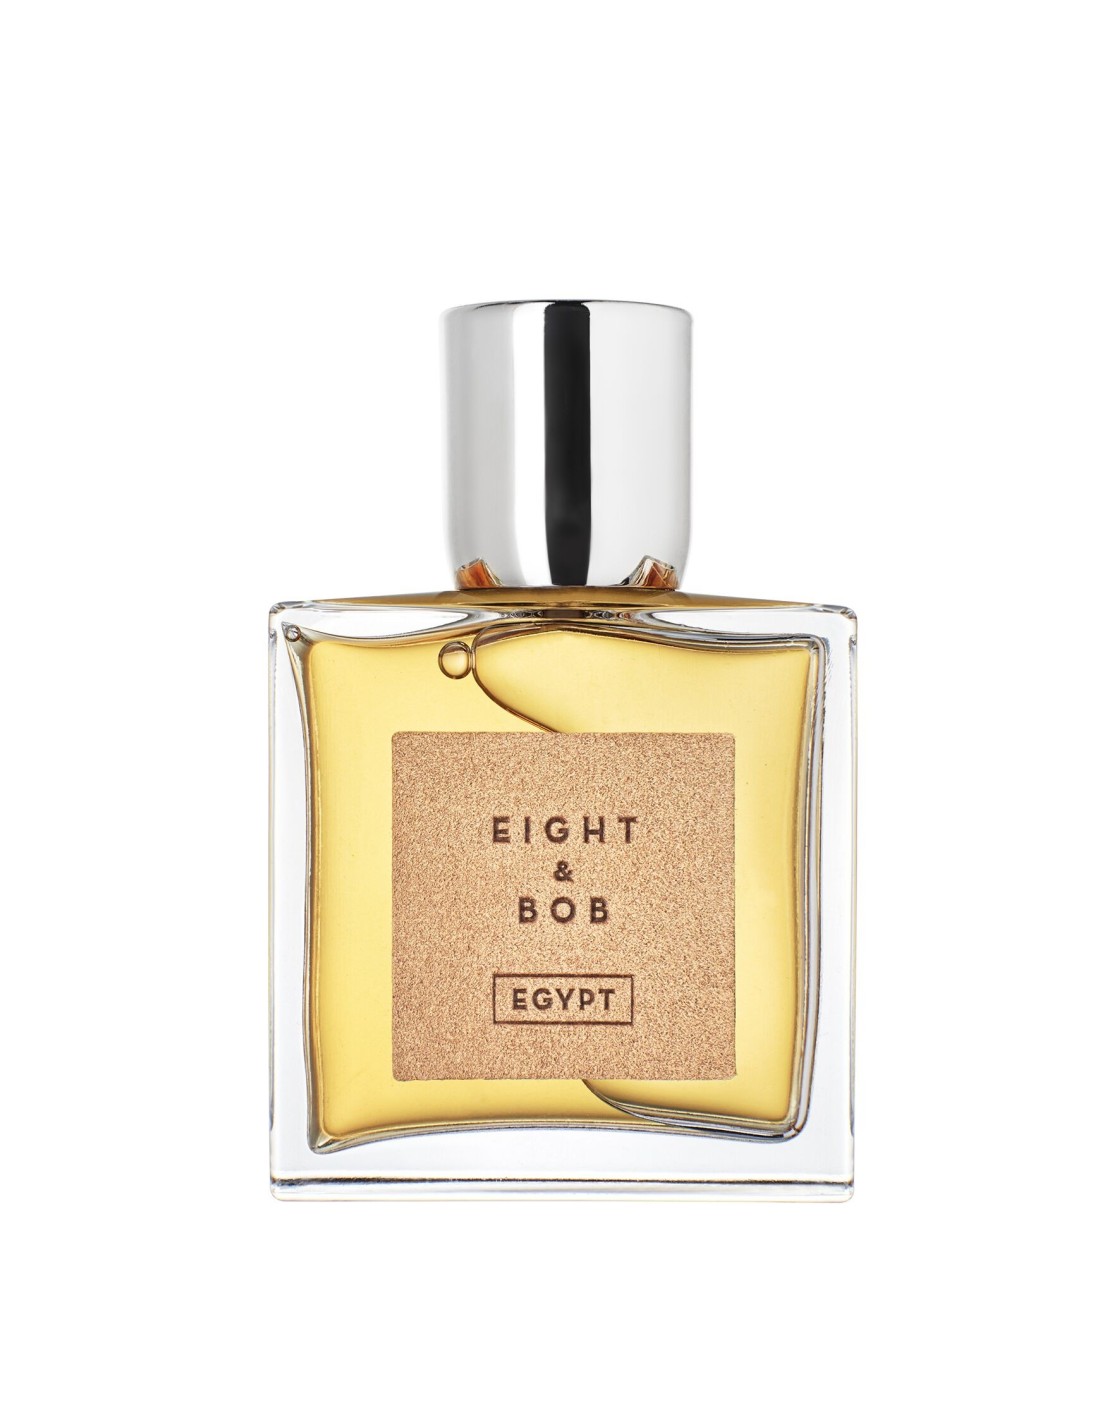 Image of Eau de parfum uomo Eight & Bob Egypt eau de parfum 100 ml